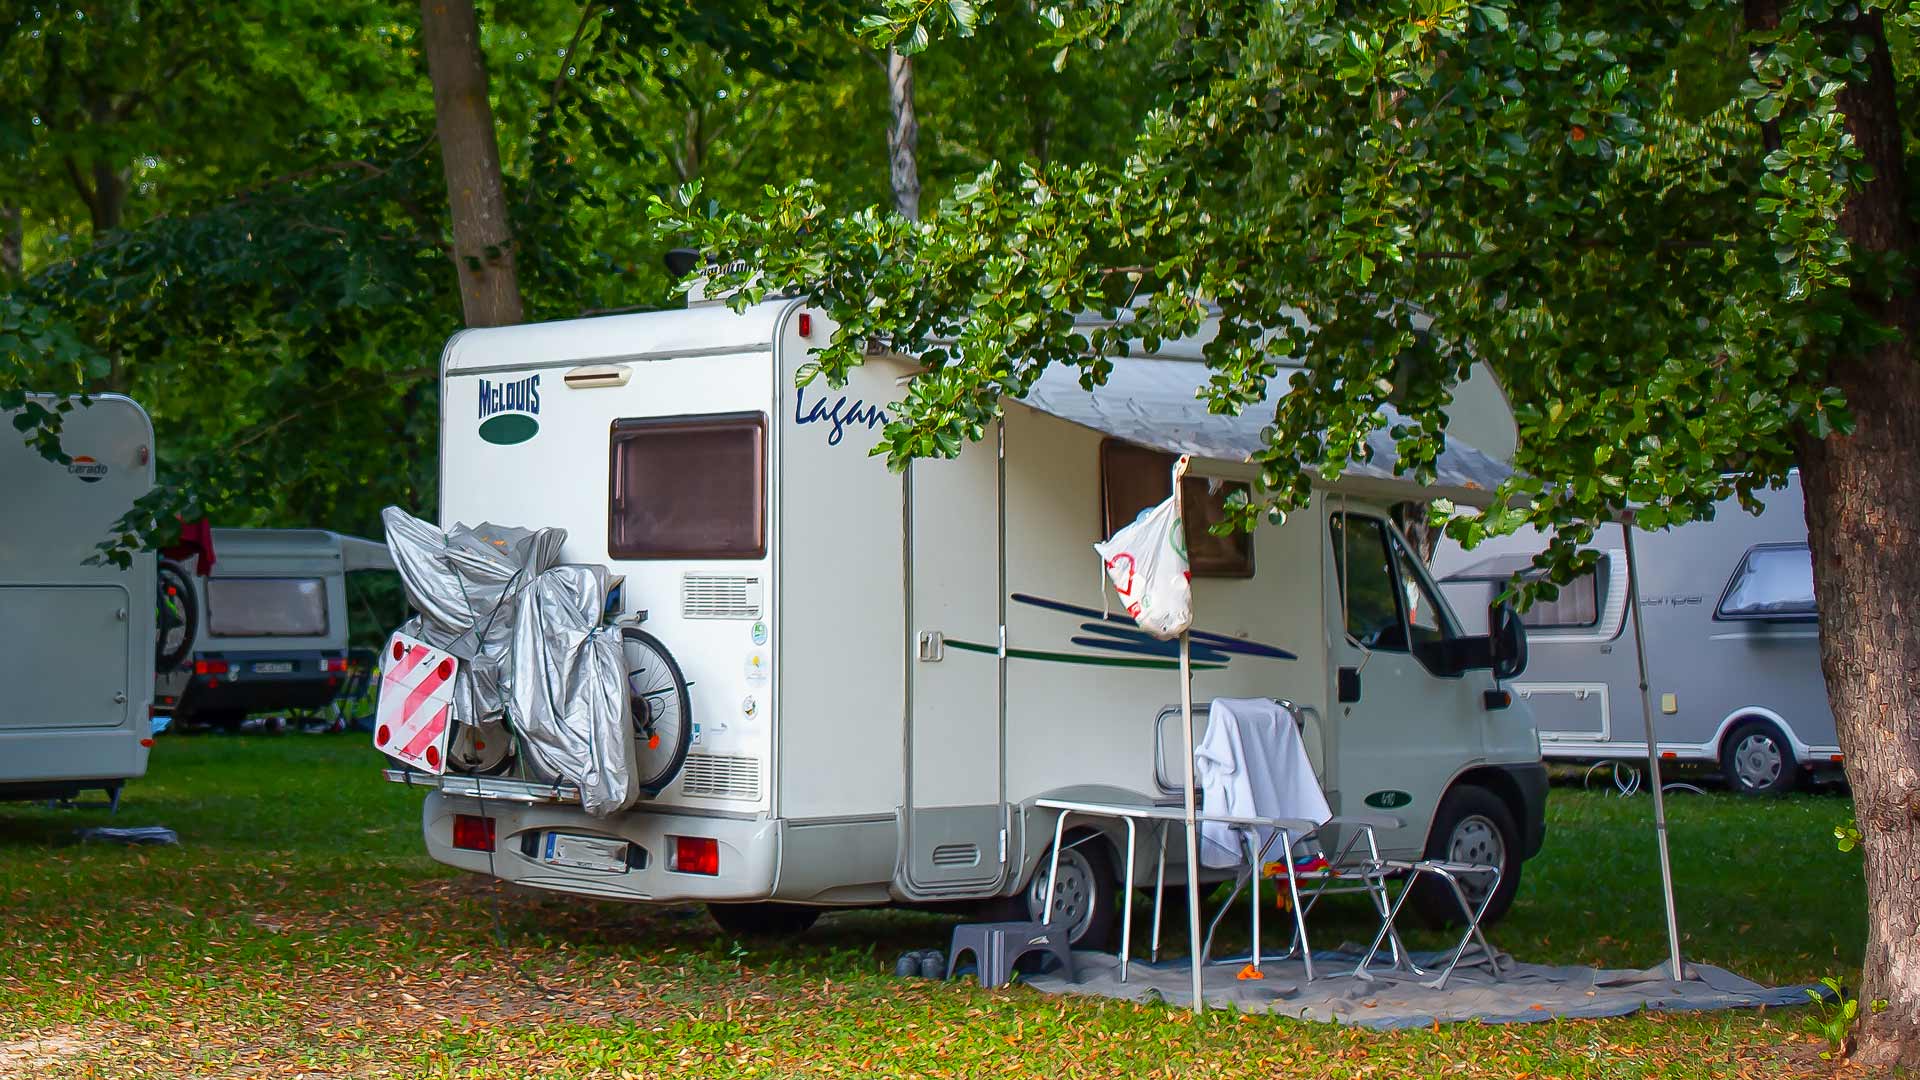 Bicycle-friendly accommodation at Thermal Camping Zalakaros